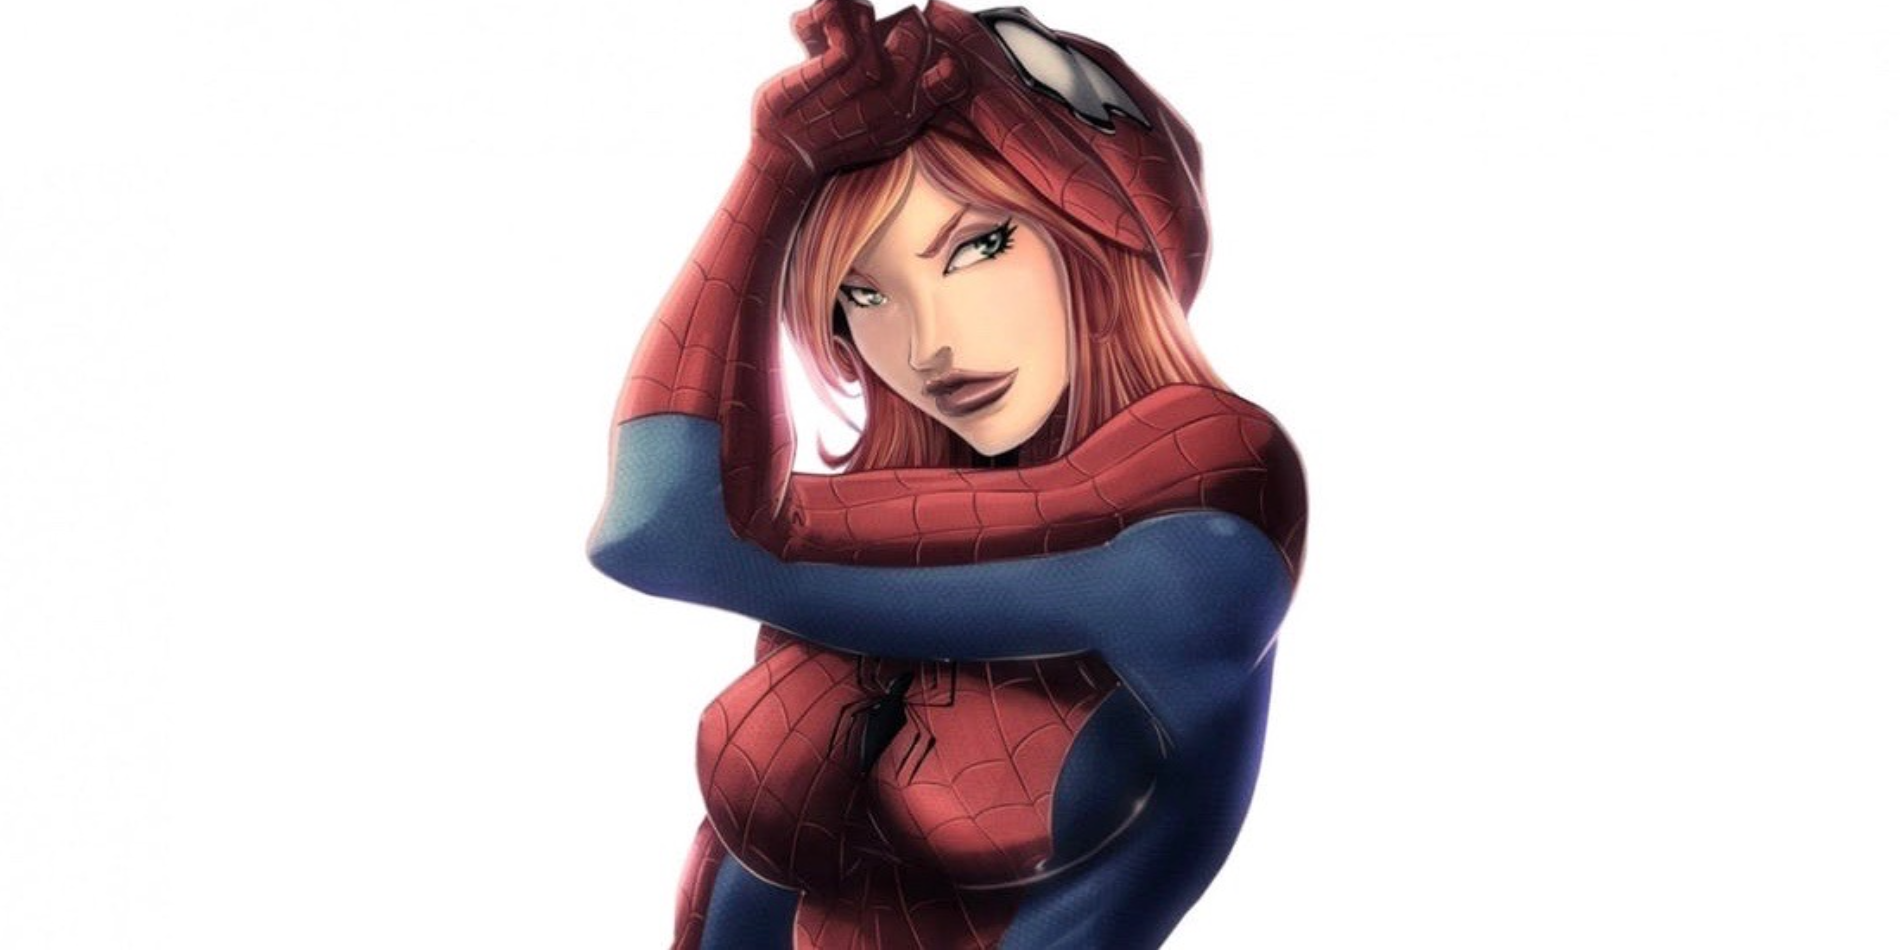 Spider Man: Mary Jane Watson Just Got Spider Powers